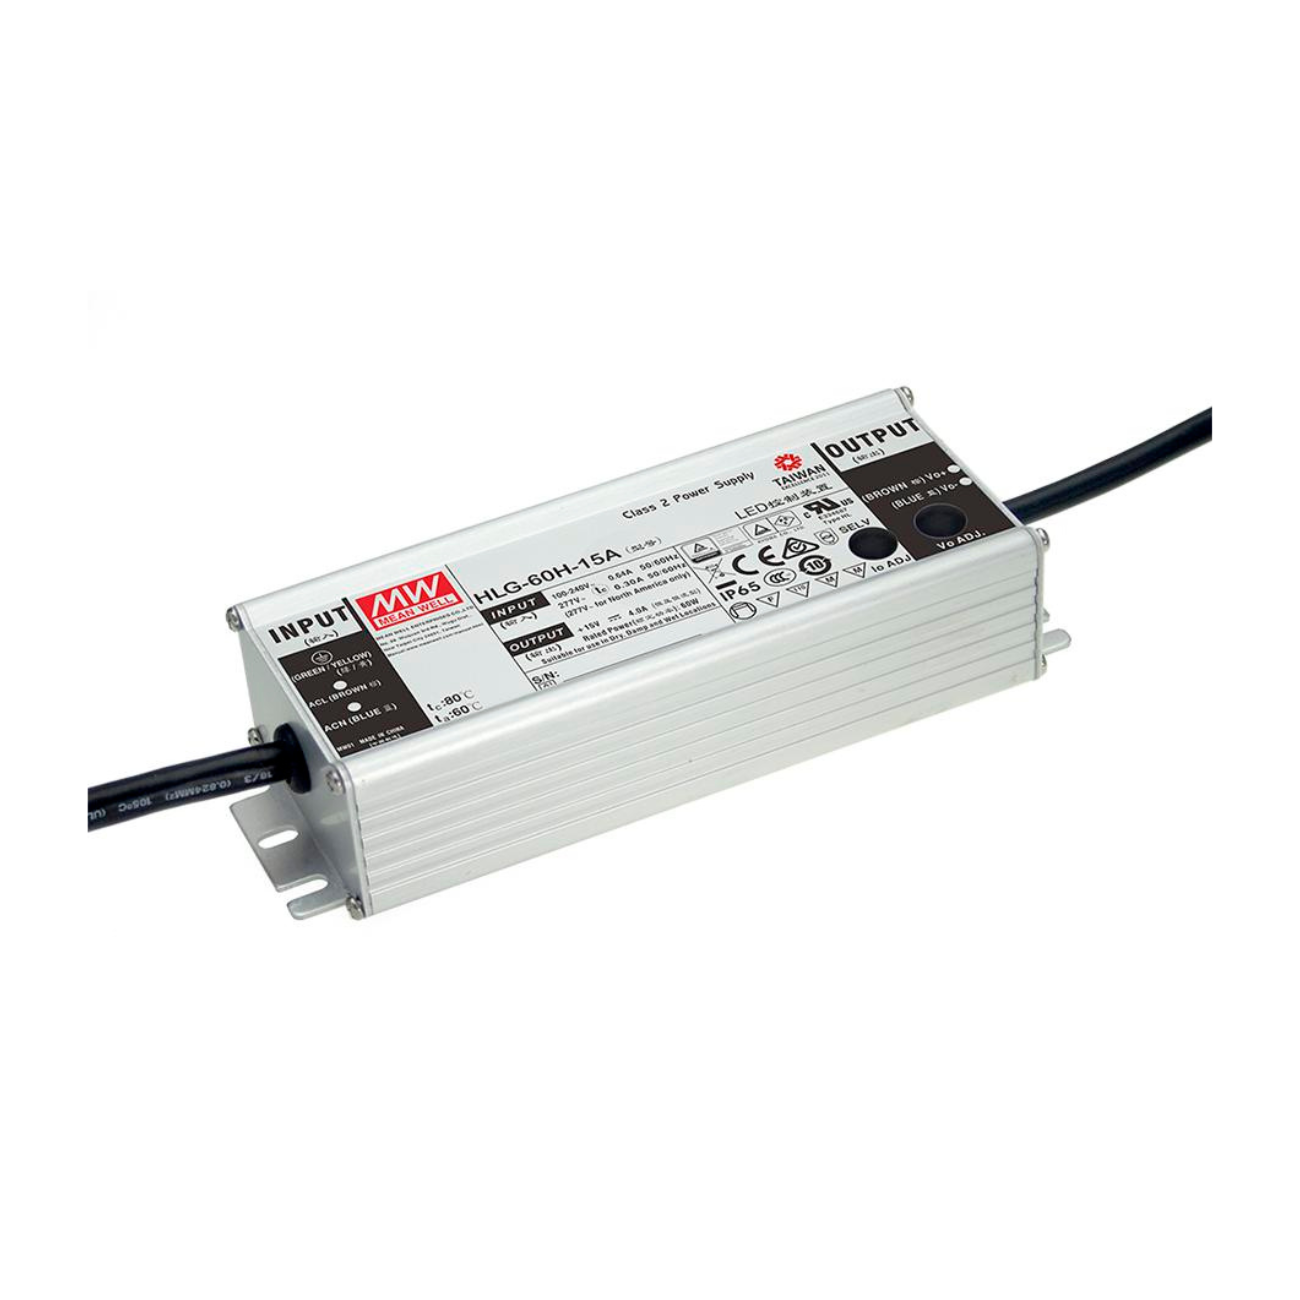 MeanWell HLG-60H-48A (62W/48V) LED-Netzteil